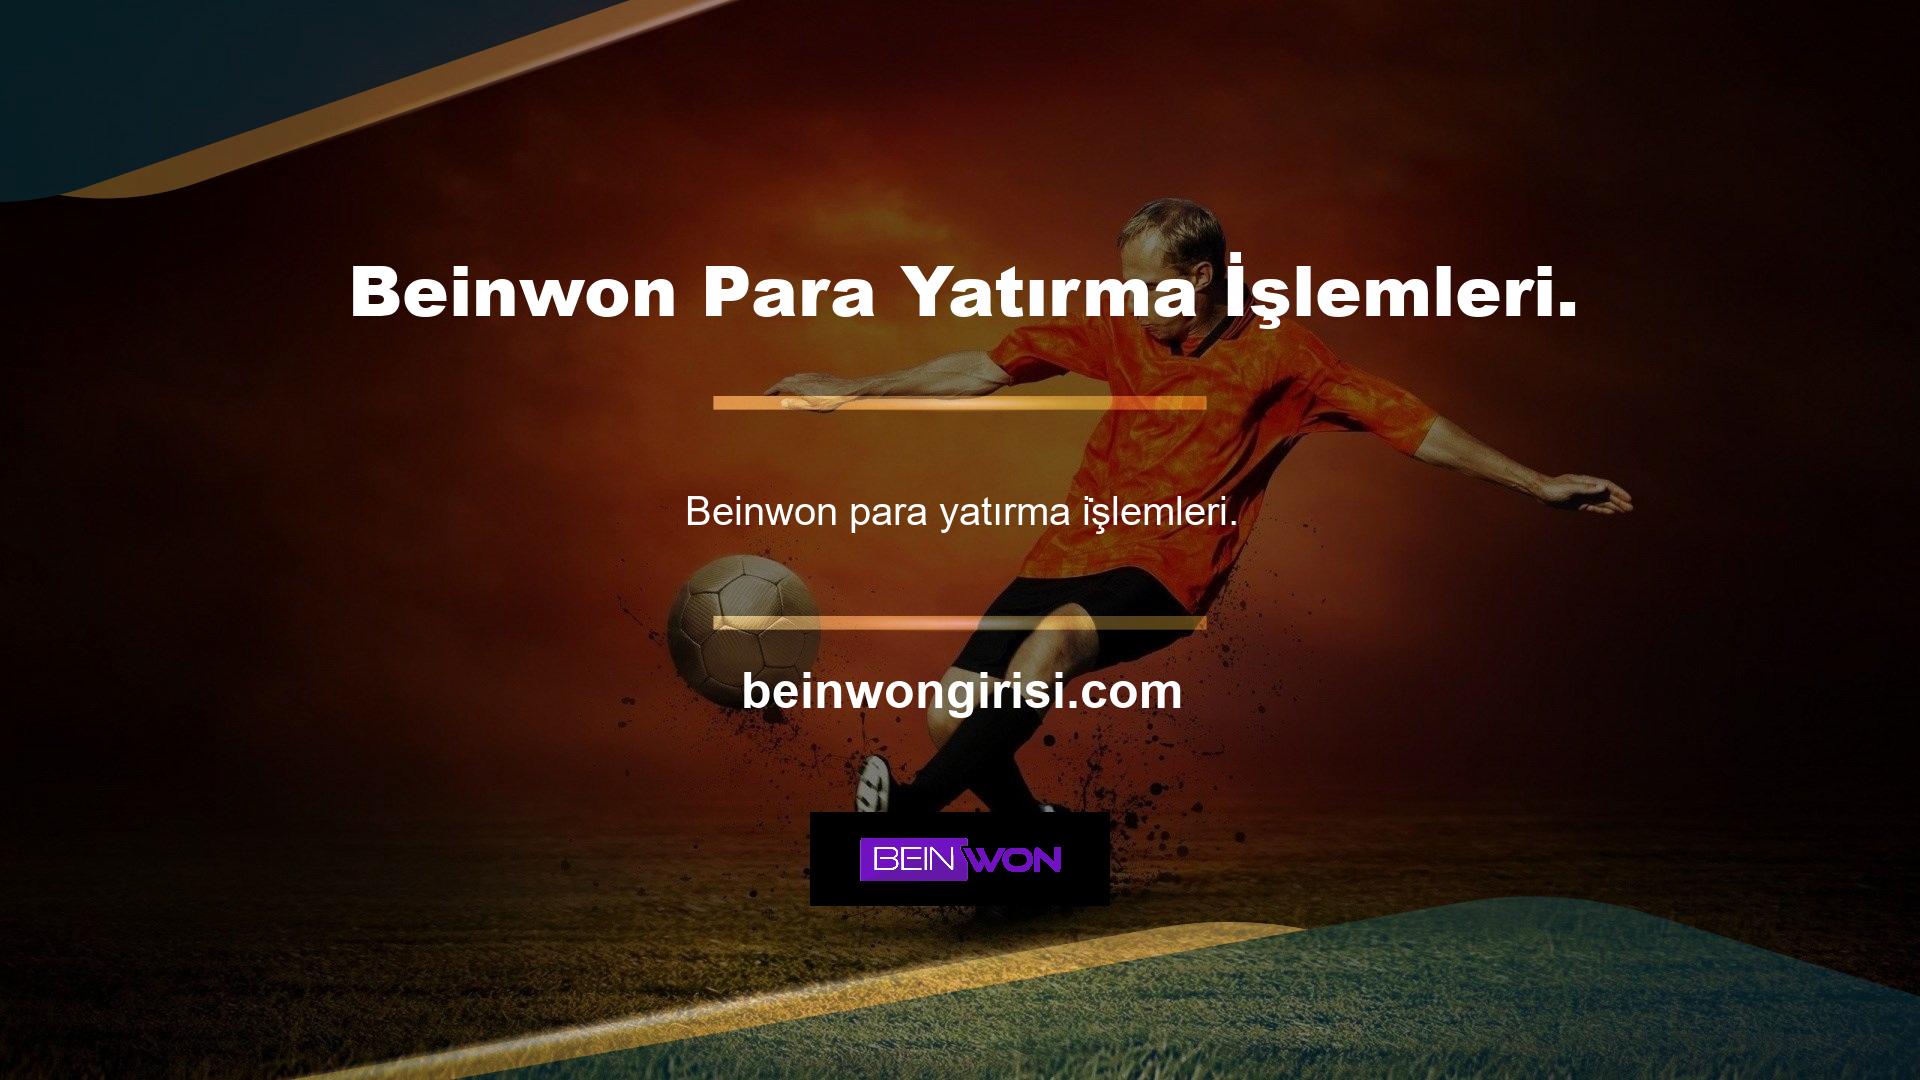 Beinwon casino sitesi, para yatırma işlemlerine izin veren ancak düzenlemeyen Türk casino mevzuatına tabidir